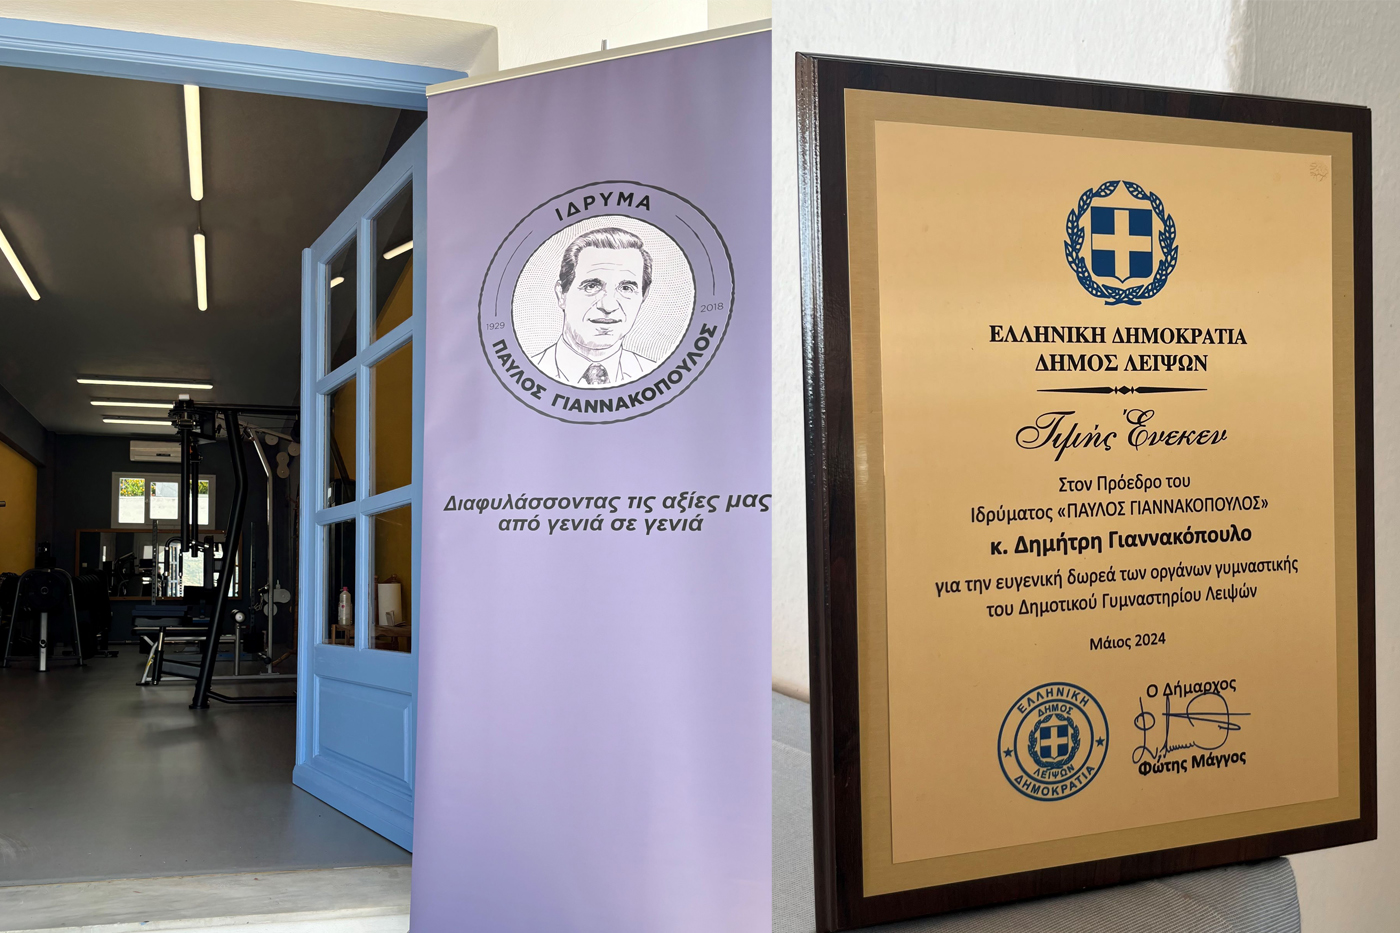 Ίδρυμα «Παύλος Γιαννακόπουλος»: Εγκαίνια στο ανακαινισμένο Κλειστό Δημοτικό Γυμναστήριο του Δήμου Λειψών